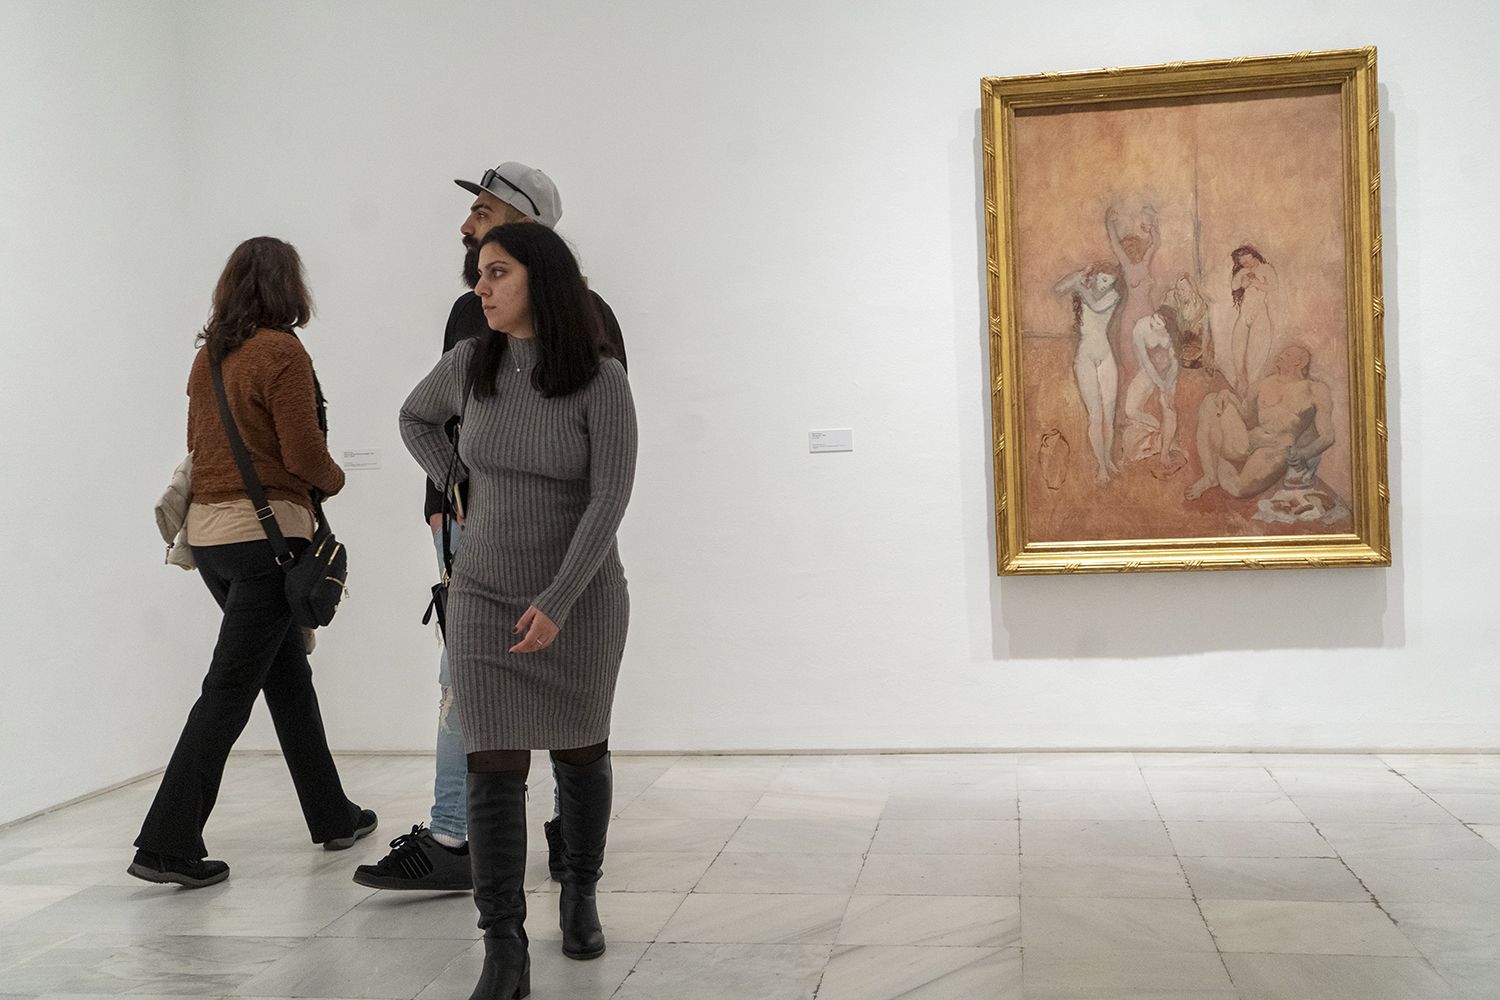 Una de les peces admirades és «L’harem», un quadre que s’ha considerat un antecedent del cubista «Les demoiselles d’Avignon»